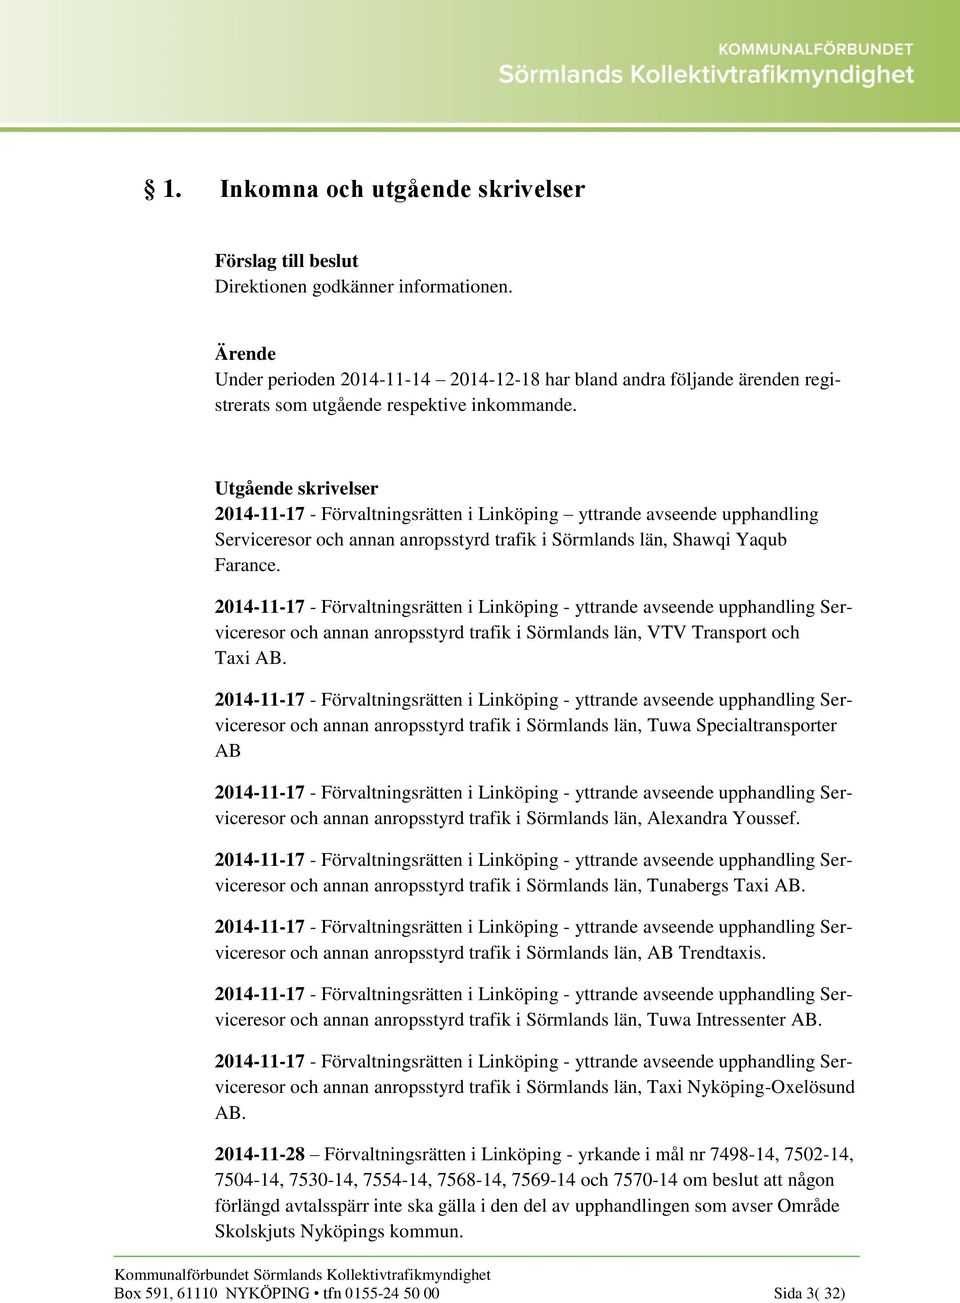 2014-11-17 - Förvaltningsrätten i Linköping - yttrande avseende upphandling Serviceresor och annan anropsstyrd trafik i Sörmlands län, VTV Transport och Taxi AB.